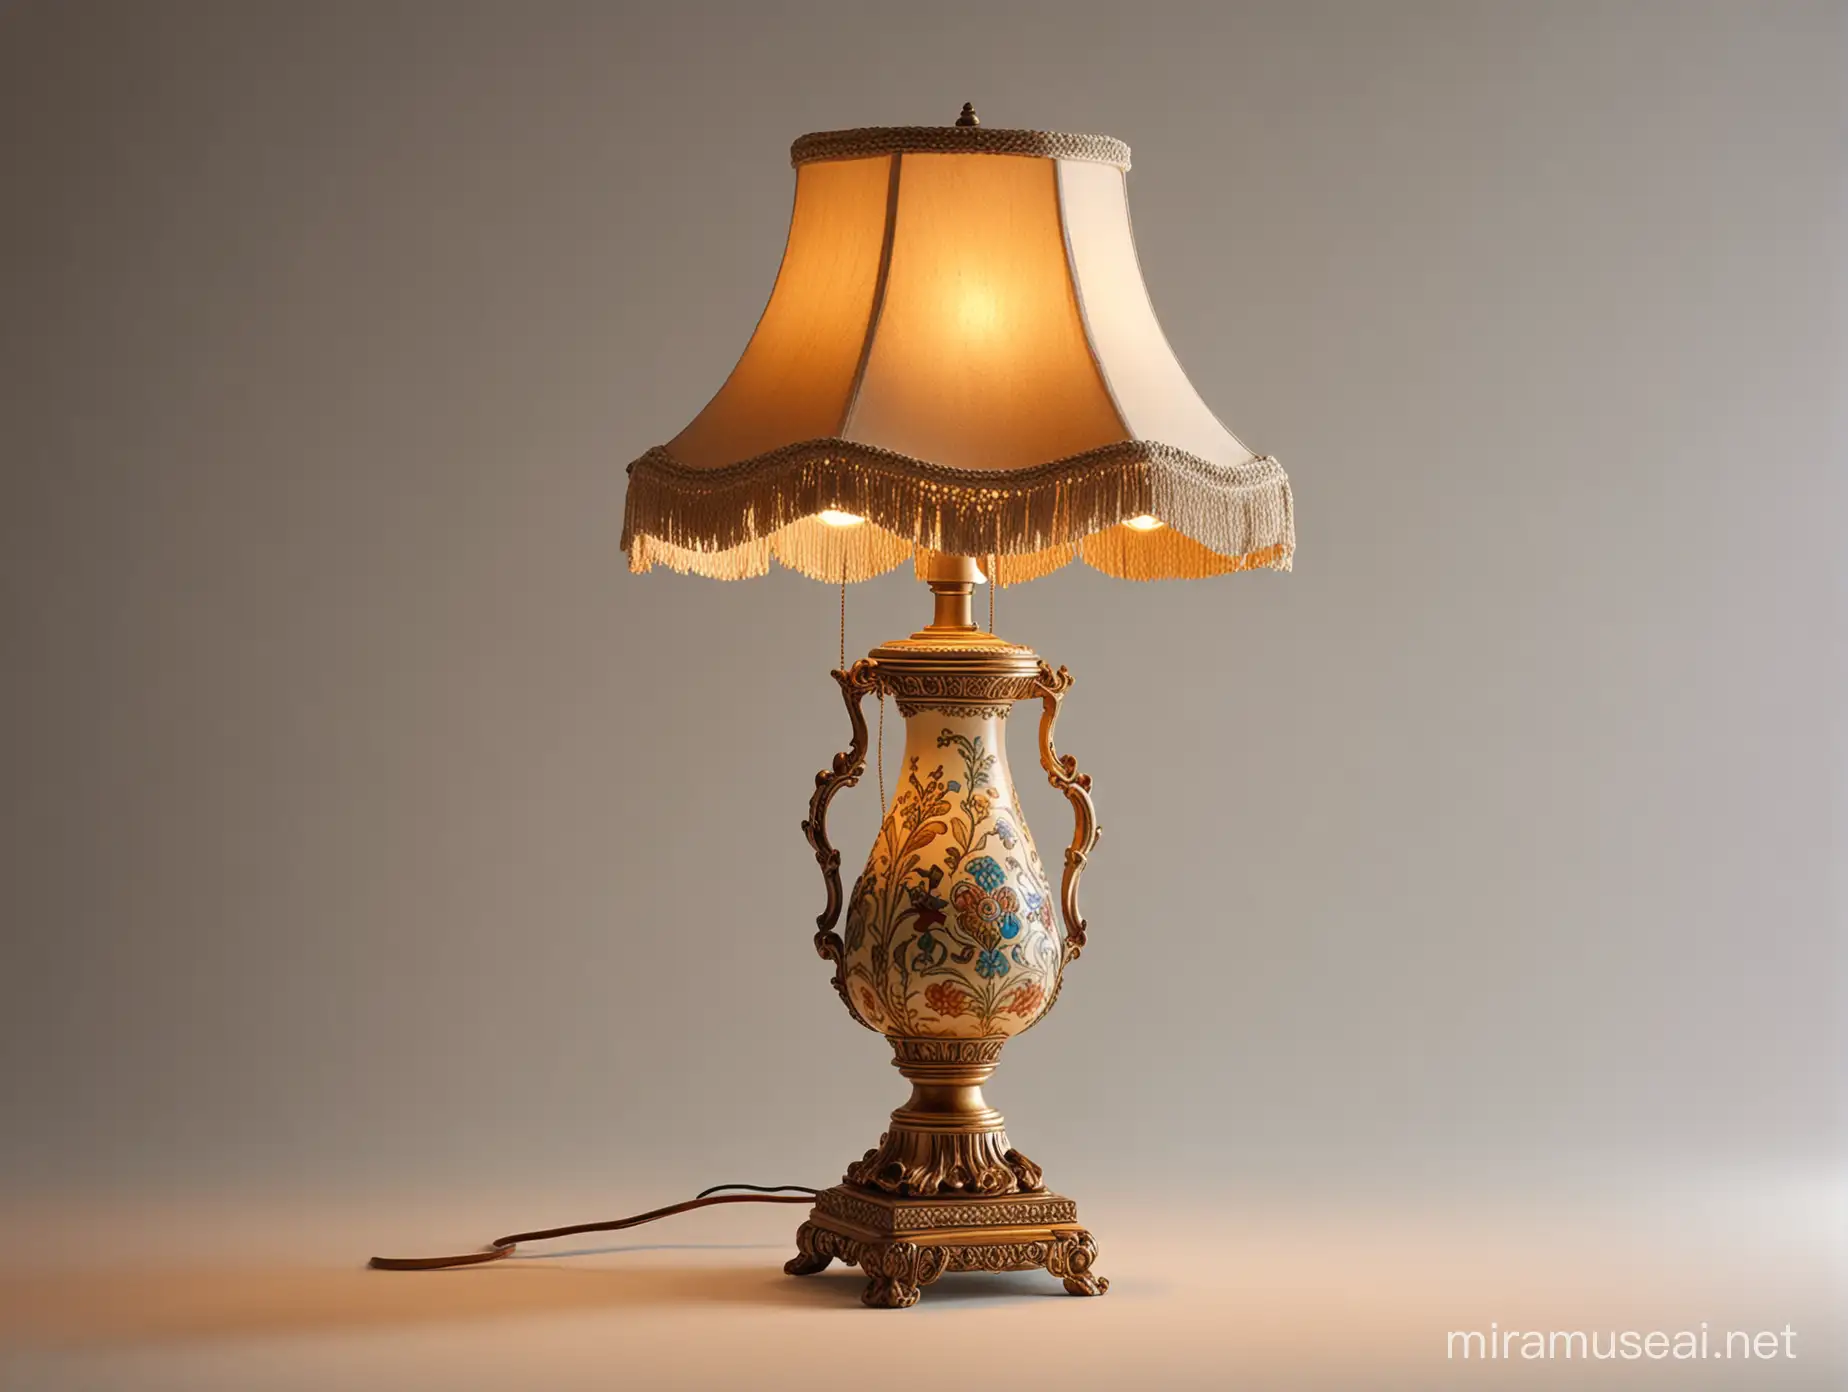 Elegant Modern Lamp with Timeless Charm Captivating Illumination on Isolated Background